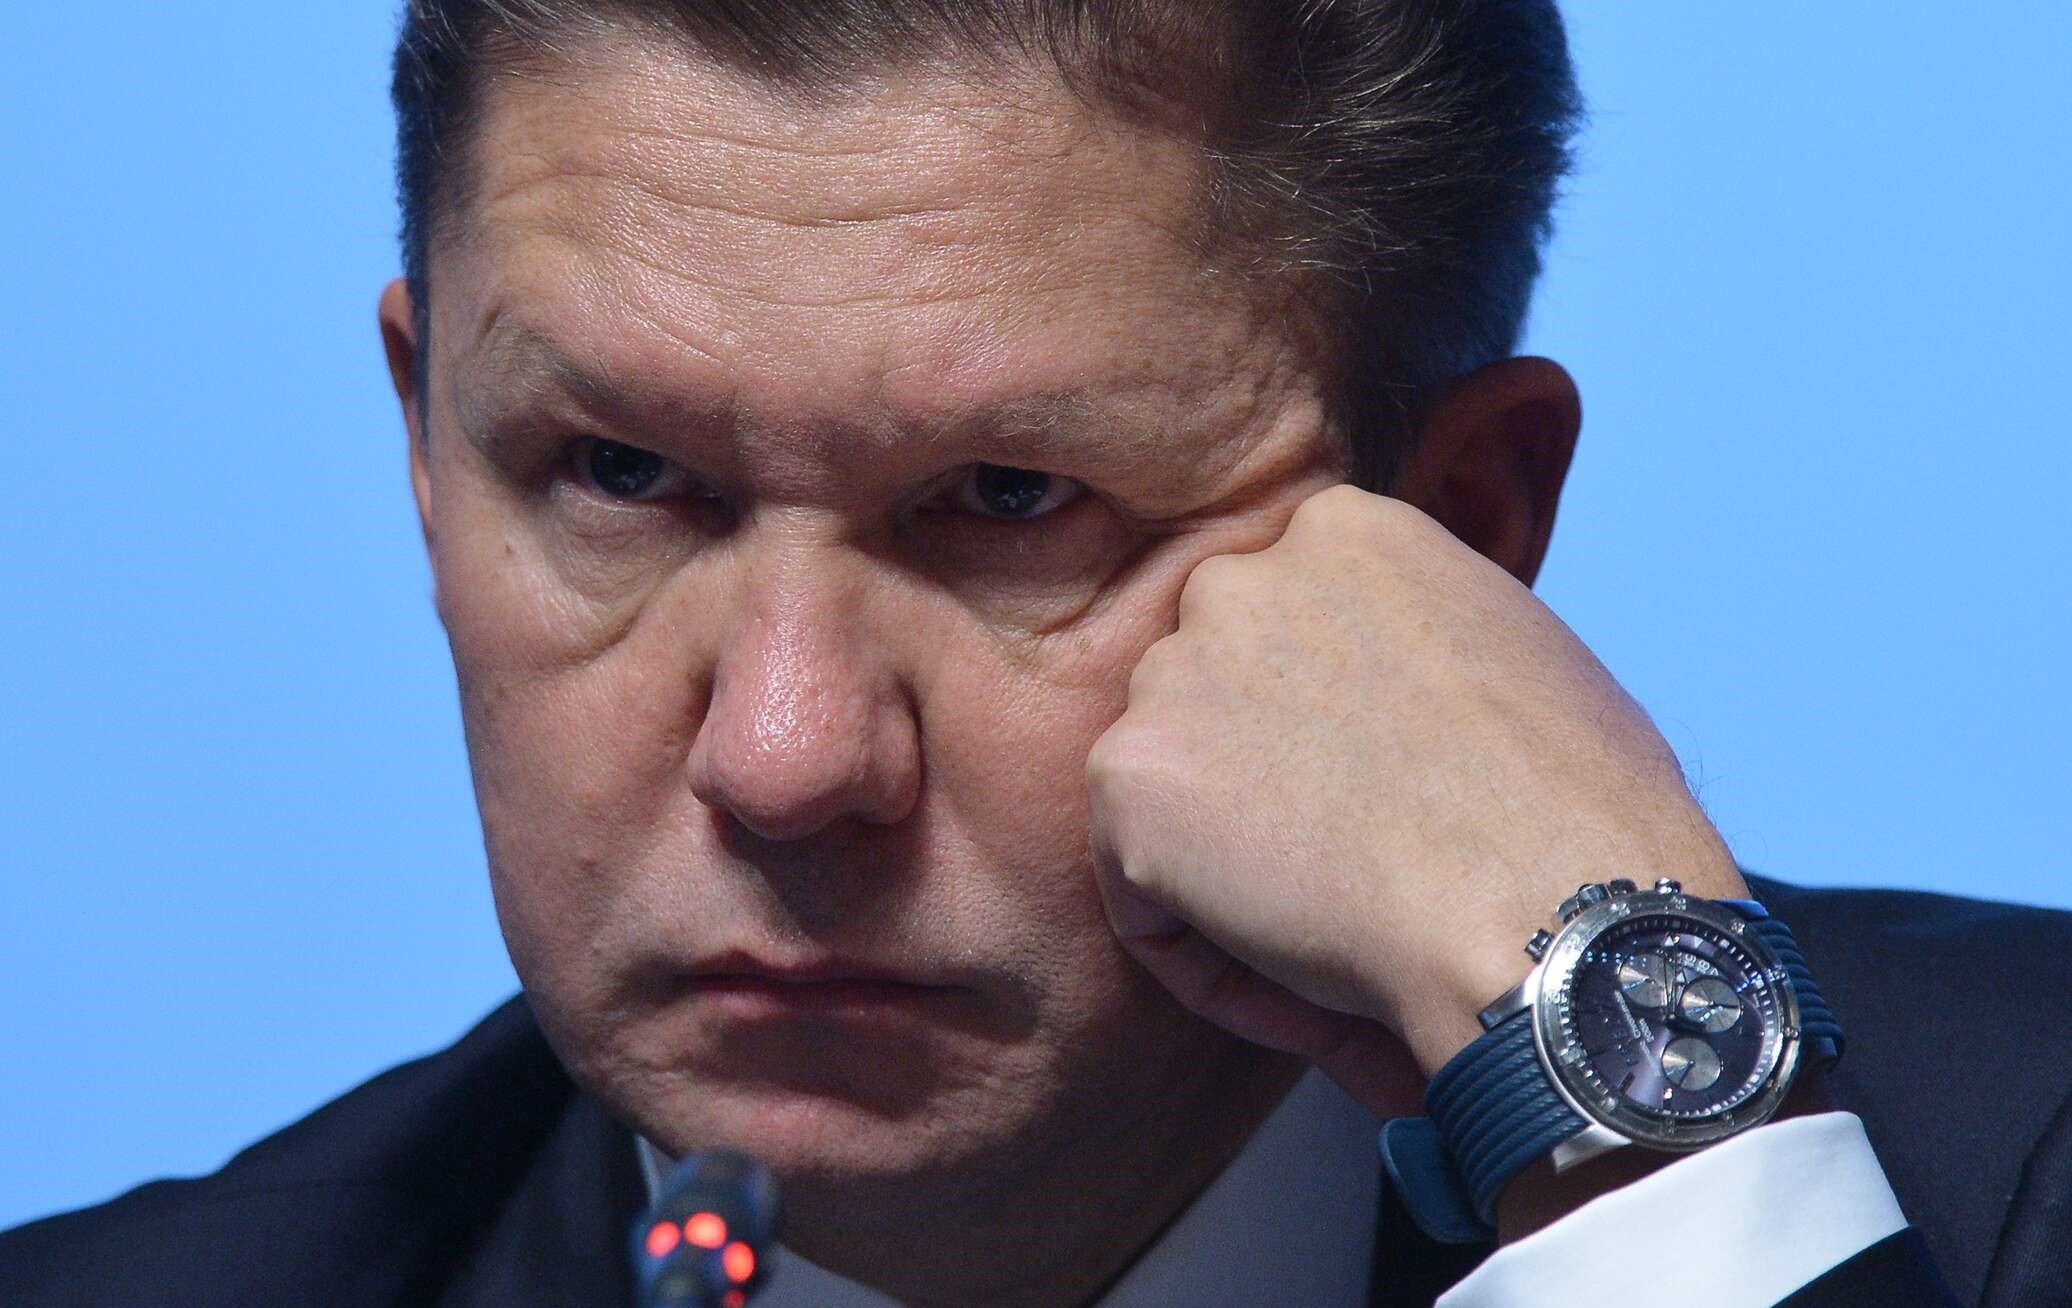 «Газпром больше не будет диктовать нам свои условия»: власти Латвии конфисковали весь хранящийся в стране газ